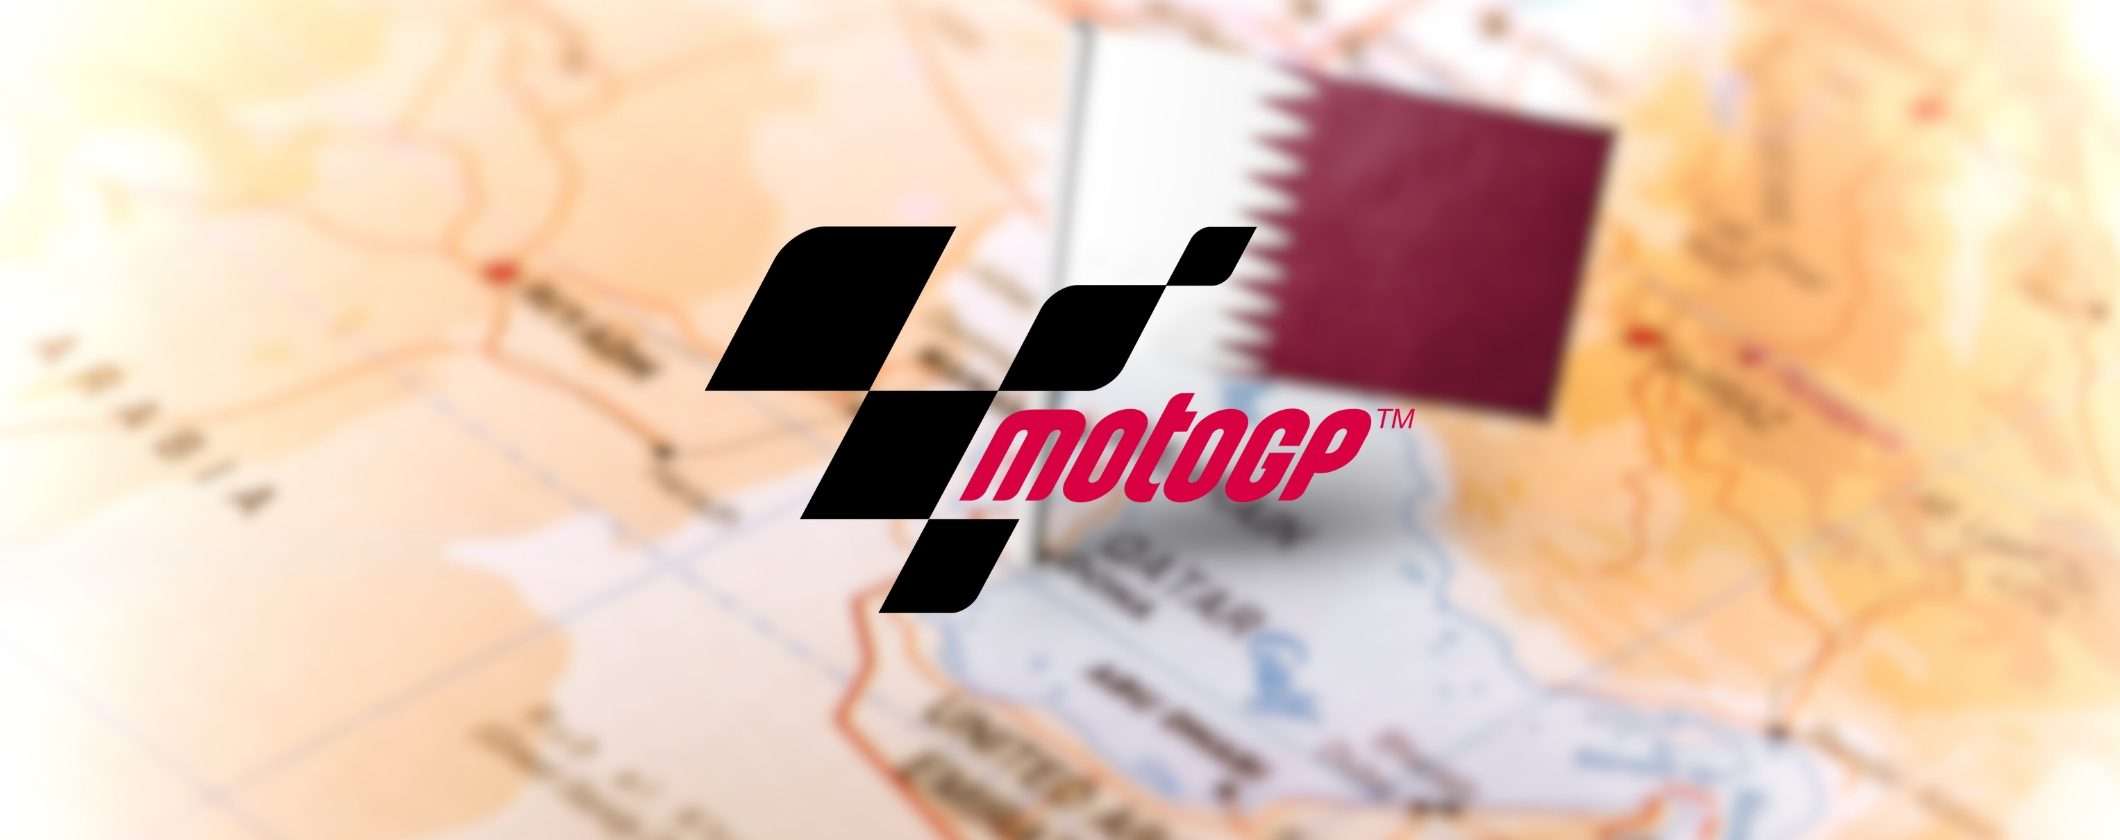 MotoGP: come vedere il GP del Qatar in streaming dall'estero